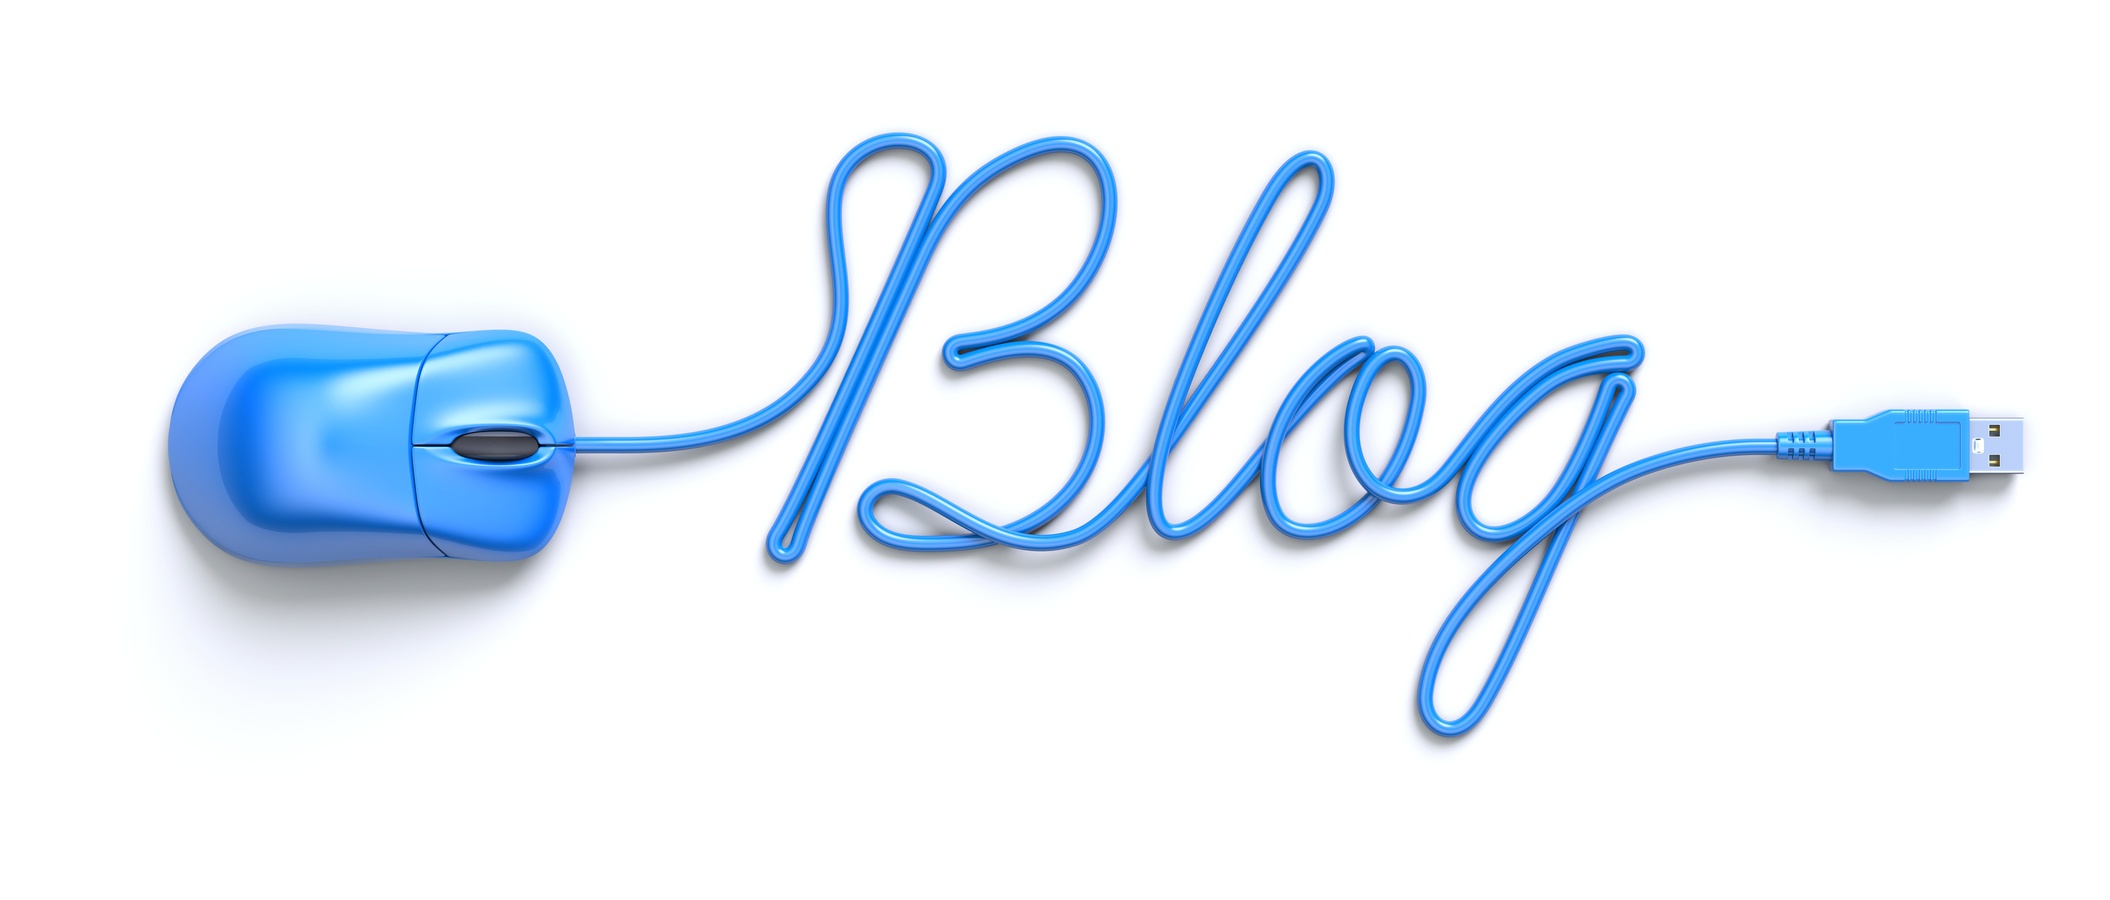 Blogging Trends for 2017 - HostRound Blog